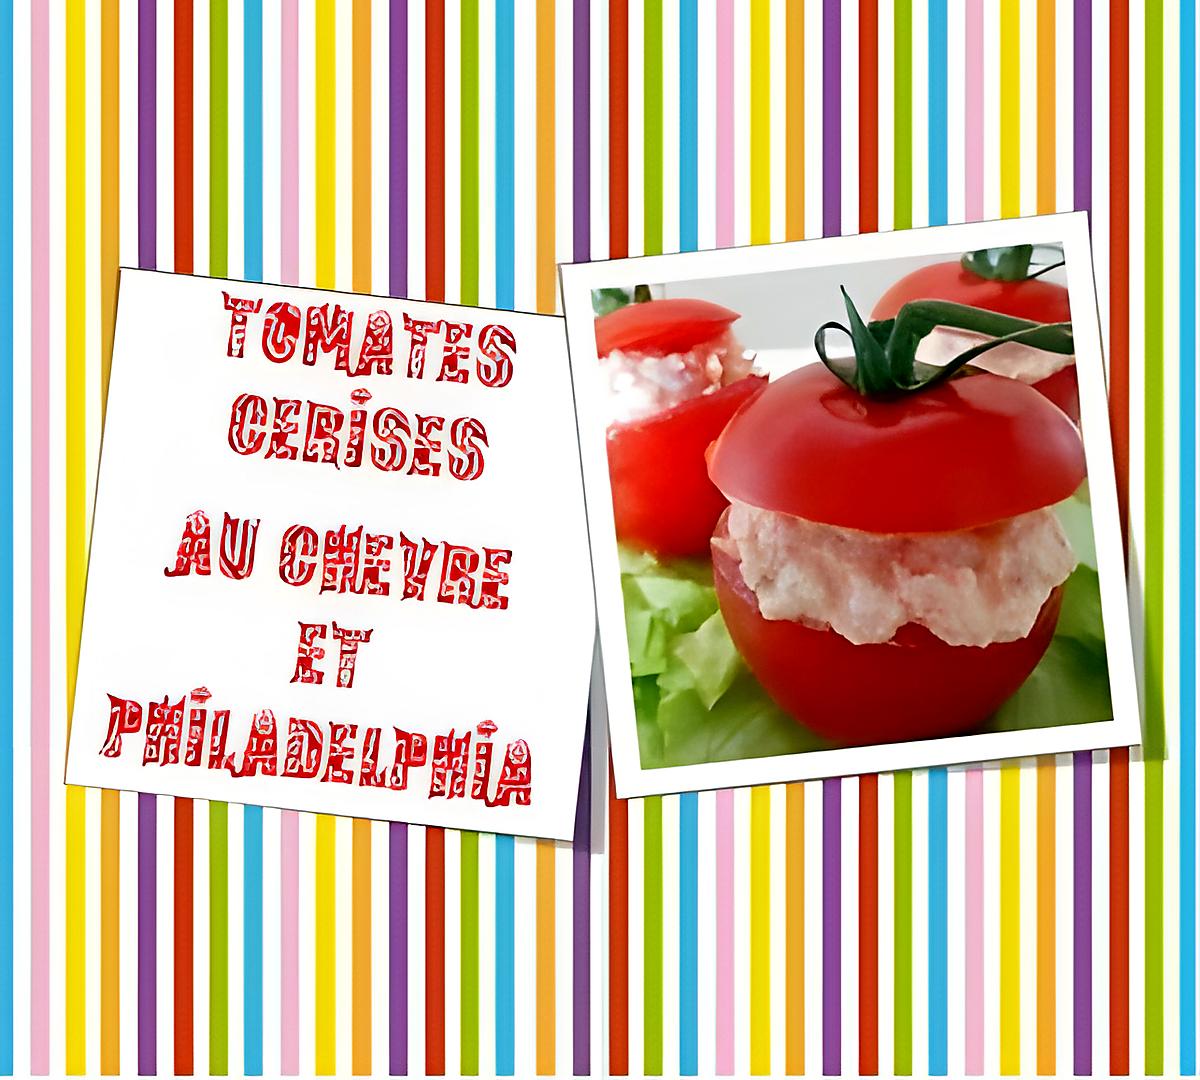 recette Tomates cerises farcies au Chèvre et Philadelphia